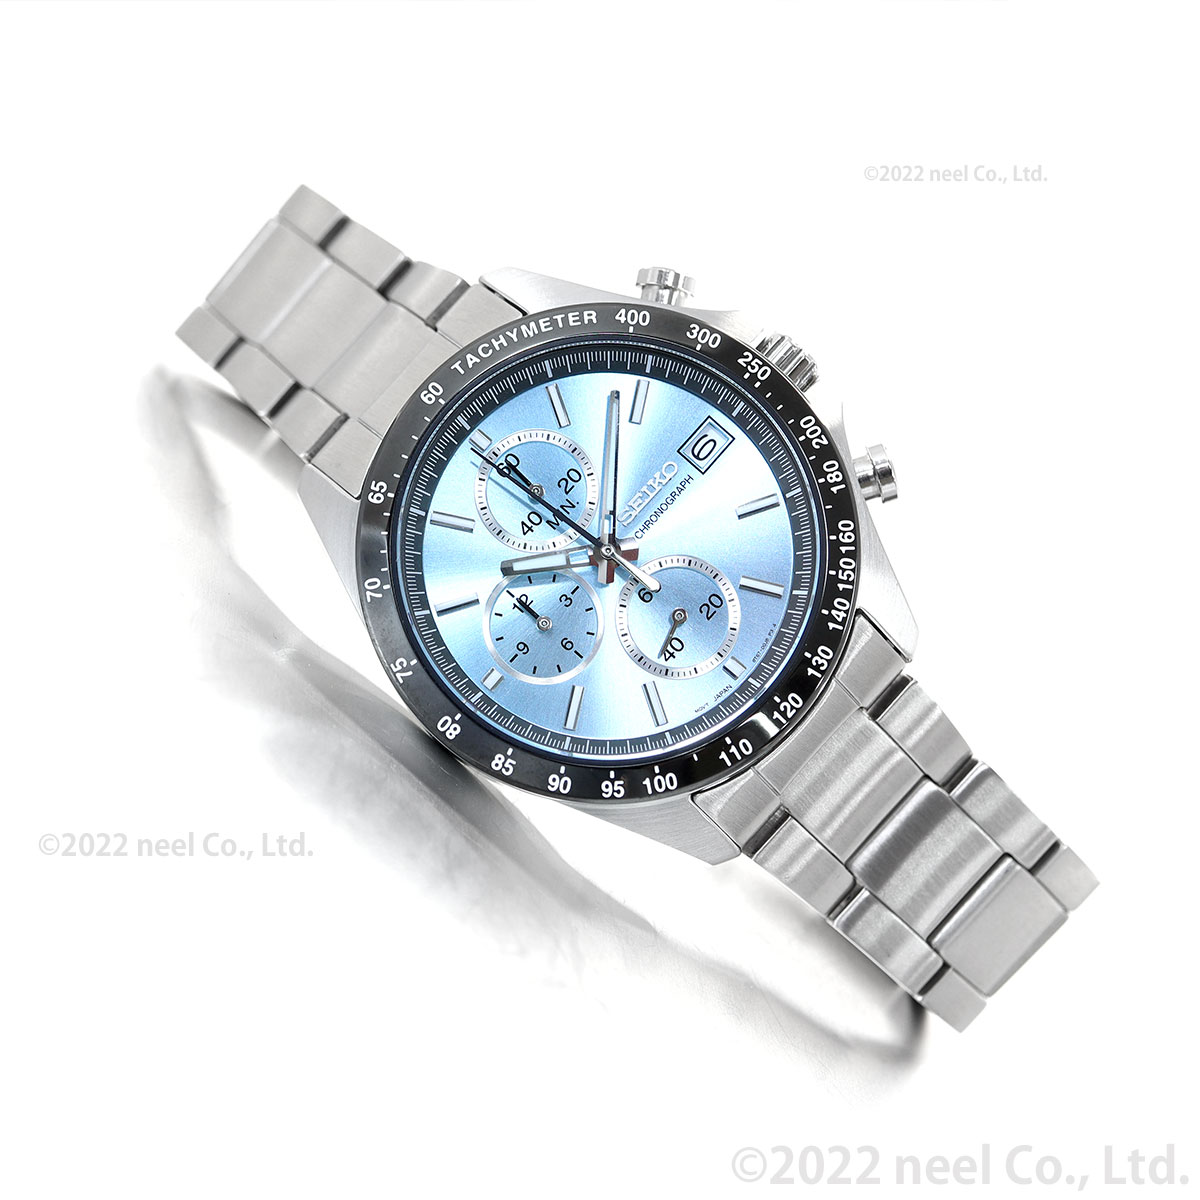 セイコー セレクション メンズ 8Tクロノ SBTR029 腕時計 クロノグラフ SEIKO SELECTION